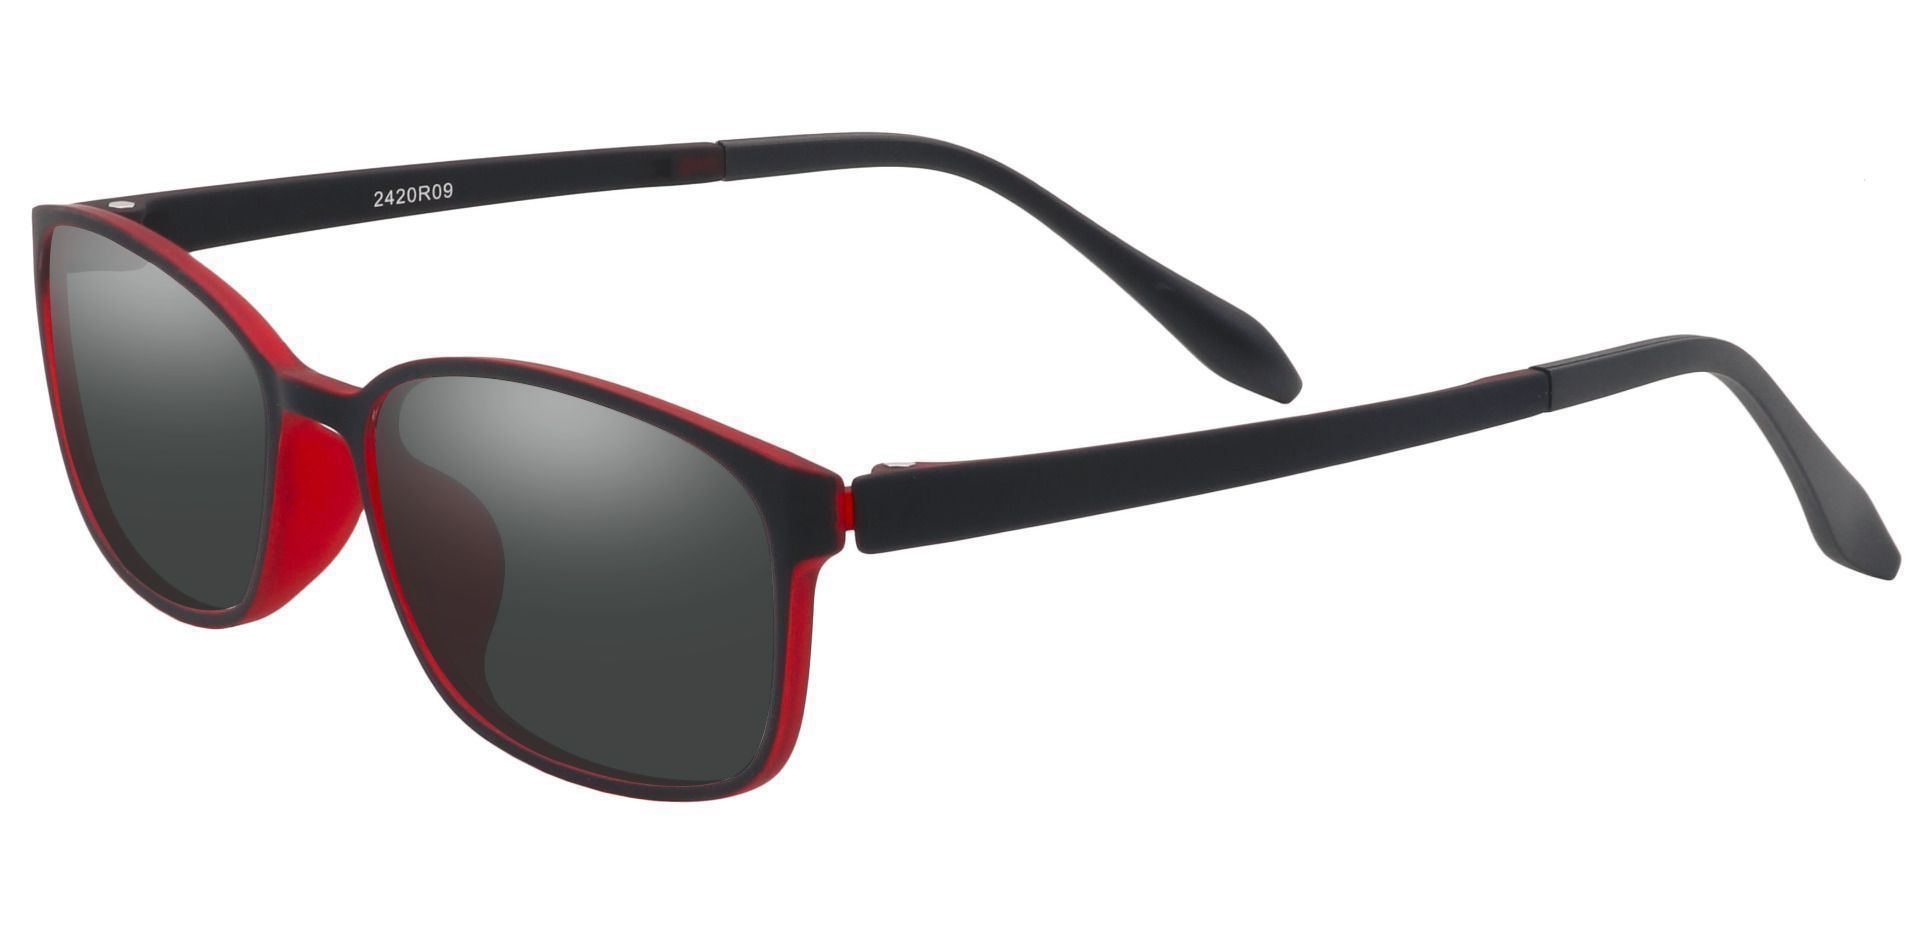 Merlot Rectangle Prescription Sunglasses - Red Frame With Gray Lenses